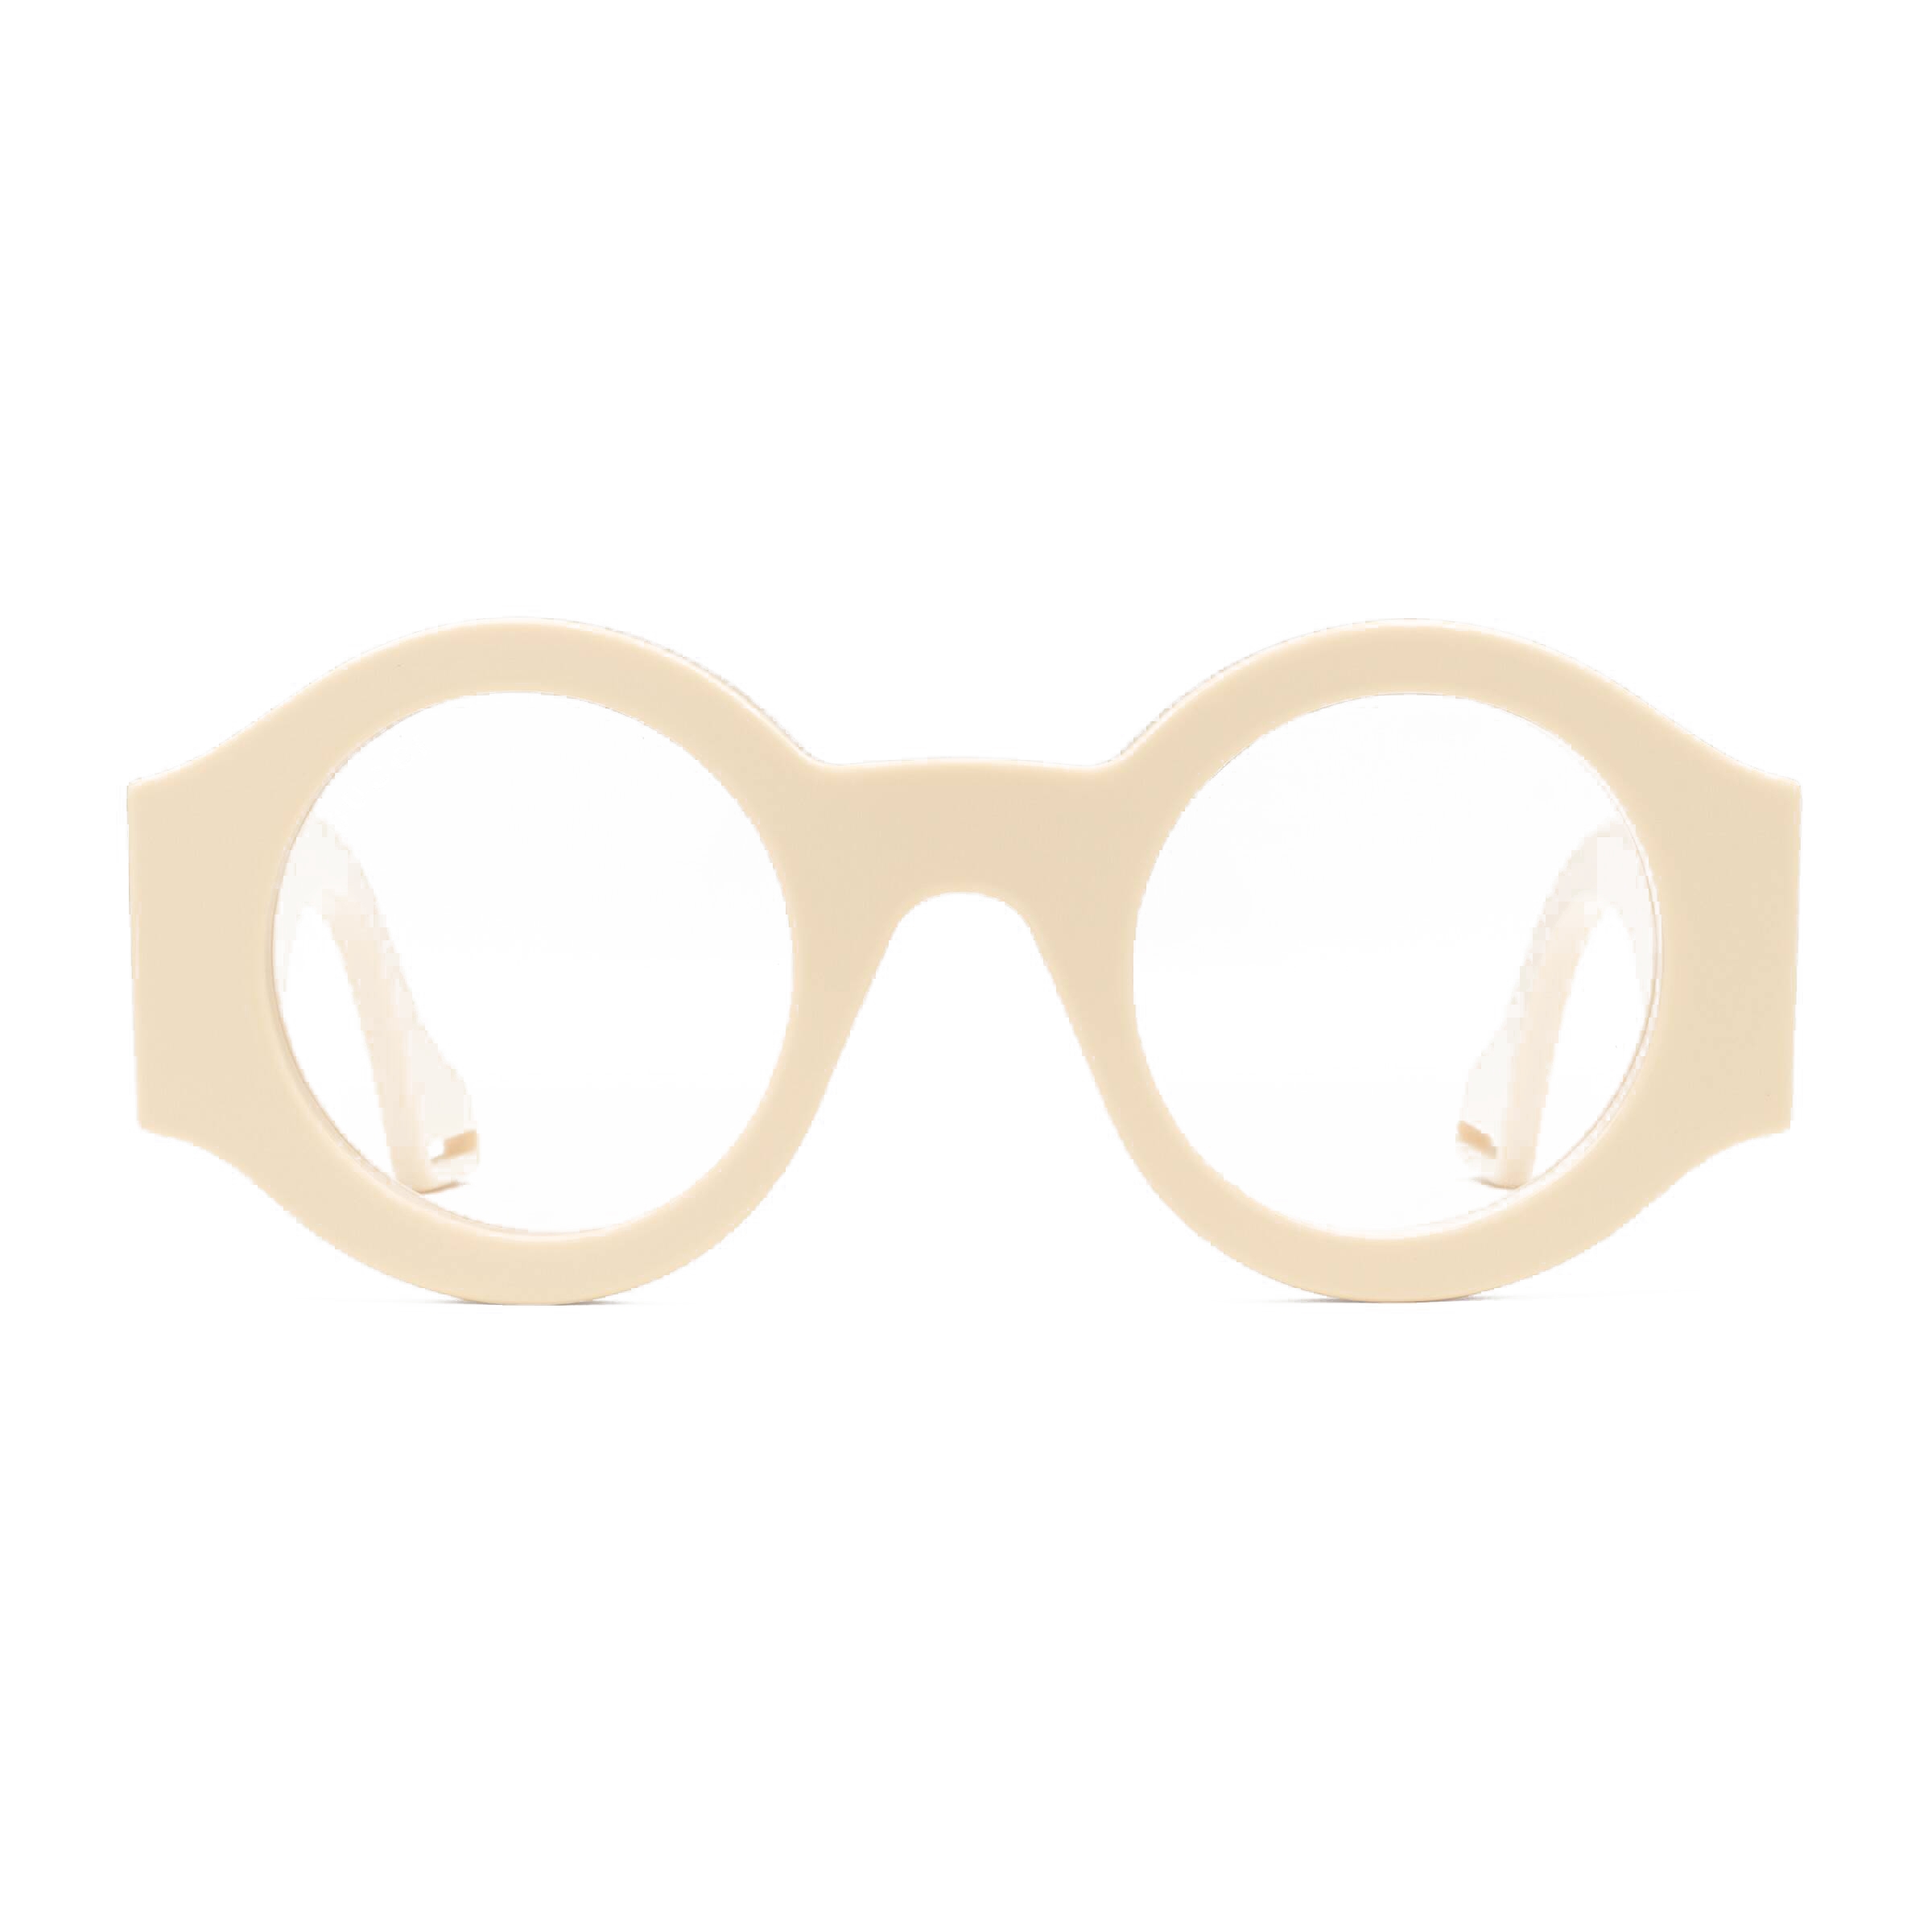 Samengroeiing gespannen Plunderen Gucci - Round Frame Acetate Sunglasses - Ivory - Gucci Eyewear - Avvenice